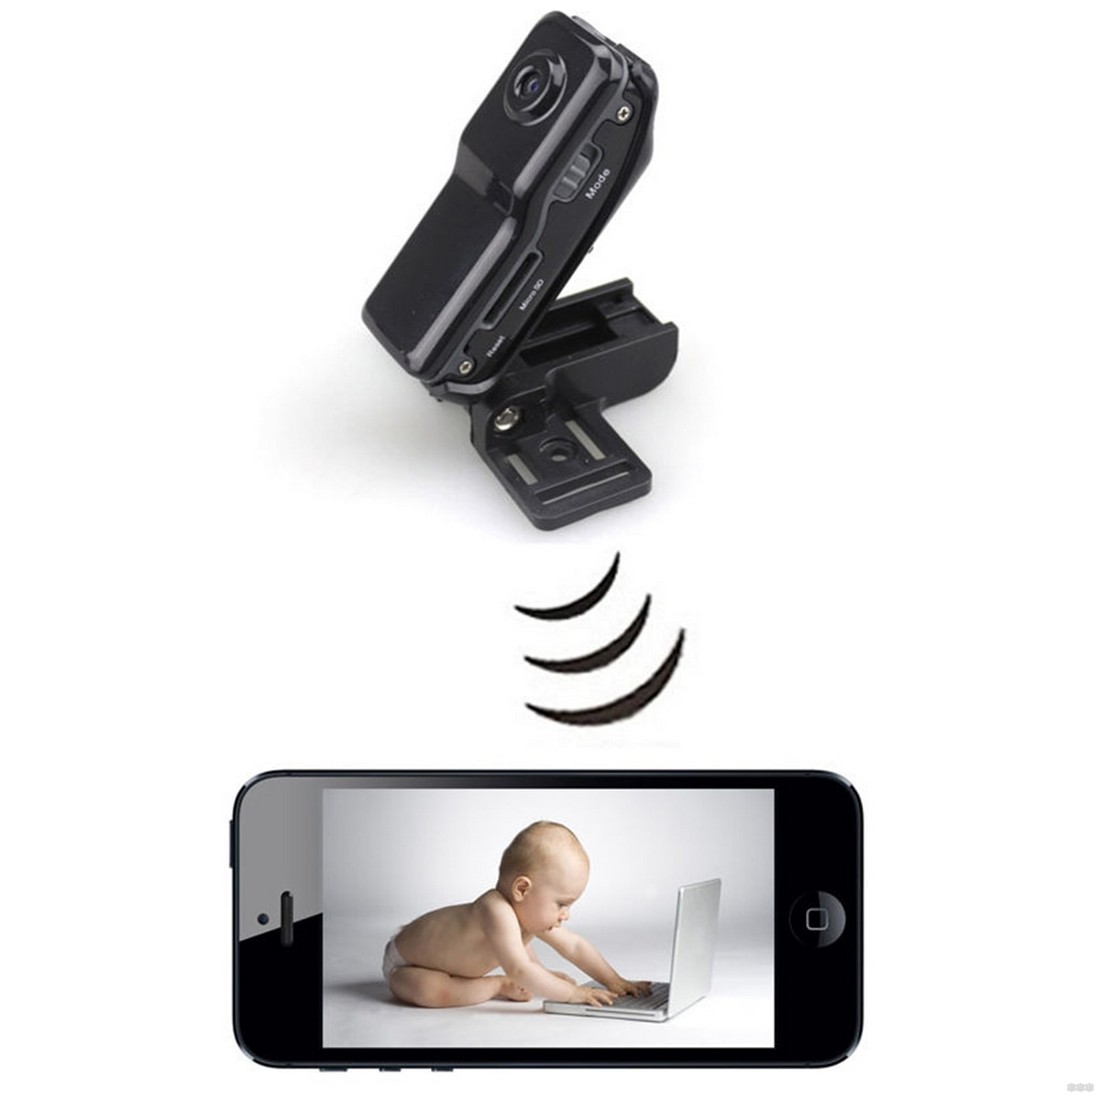 Мини-камера WI-FI: скрытая камера видеонаблюдения для дома